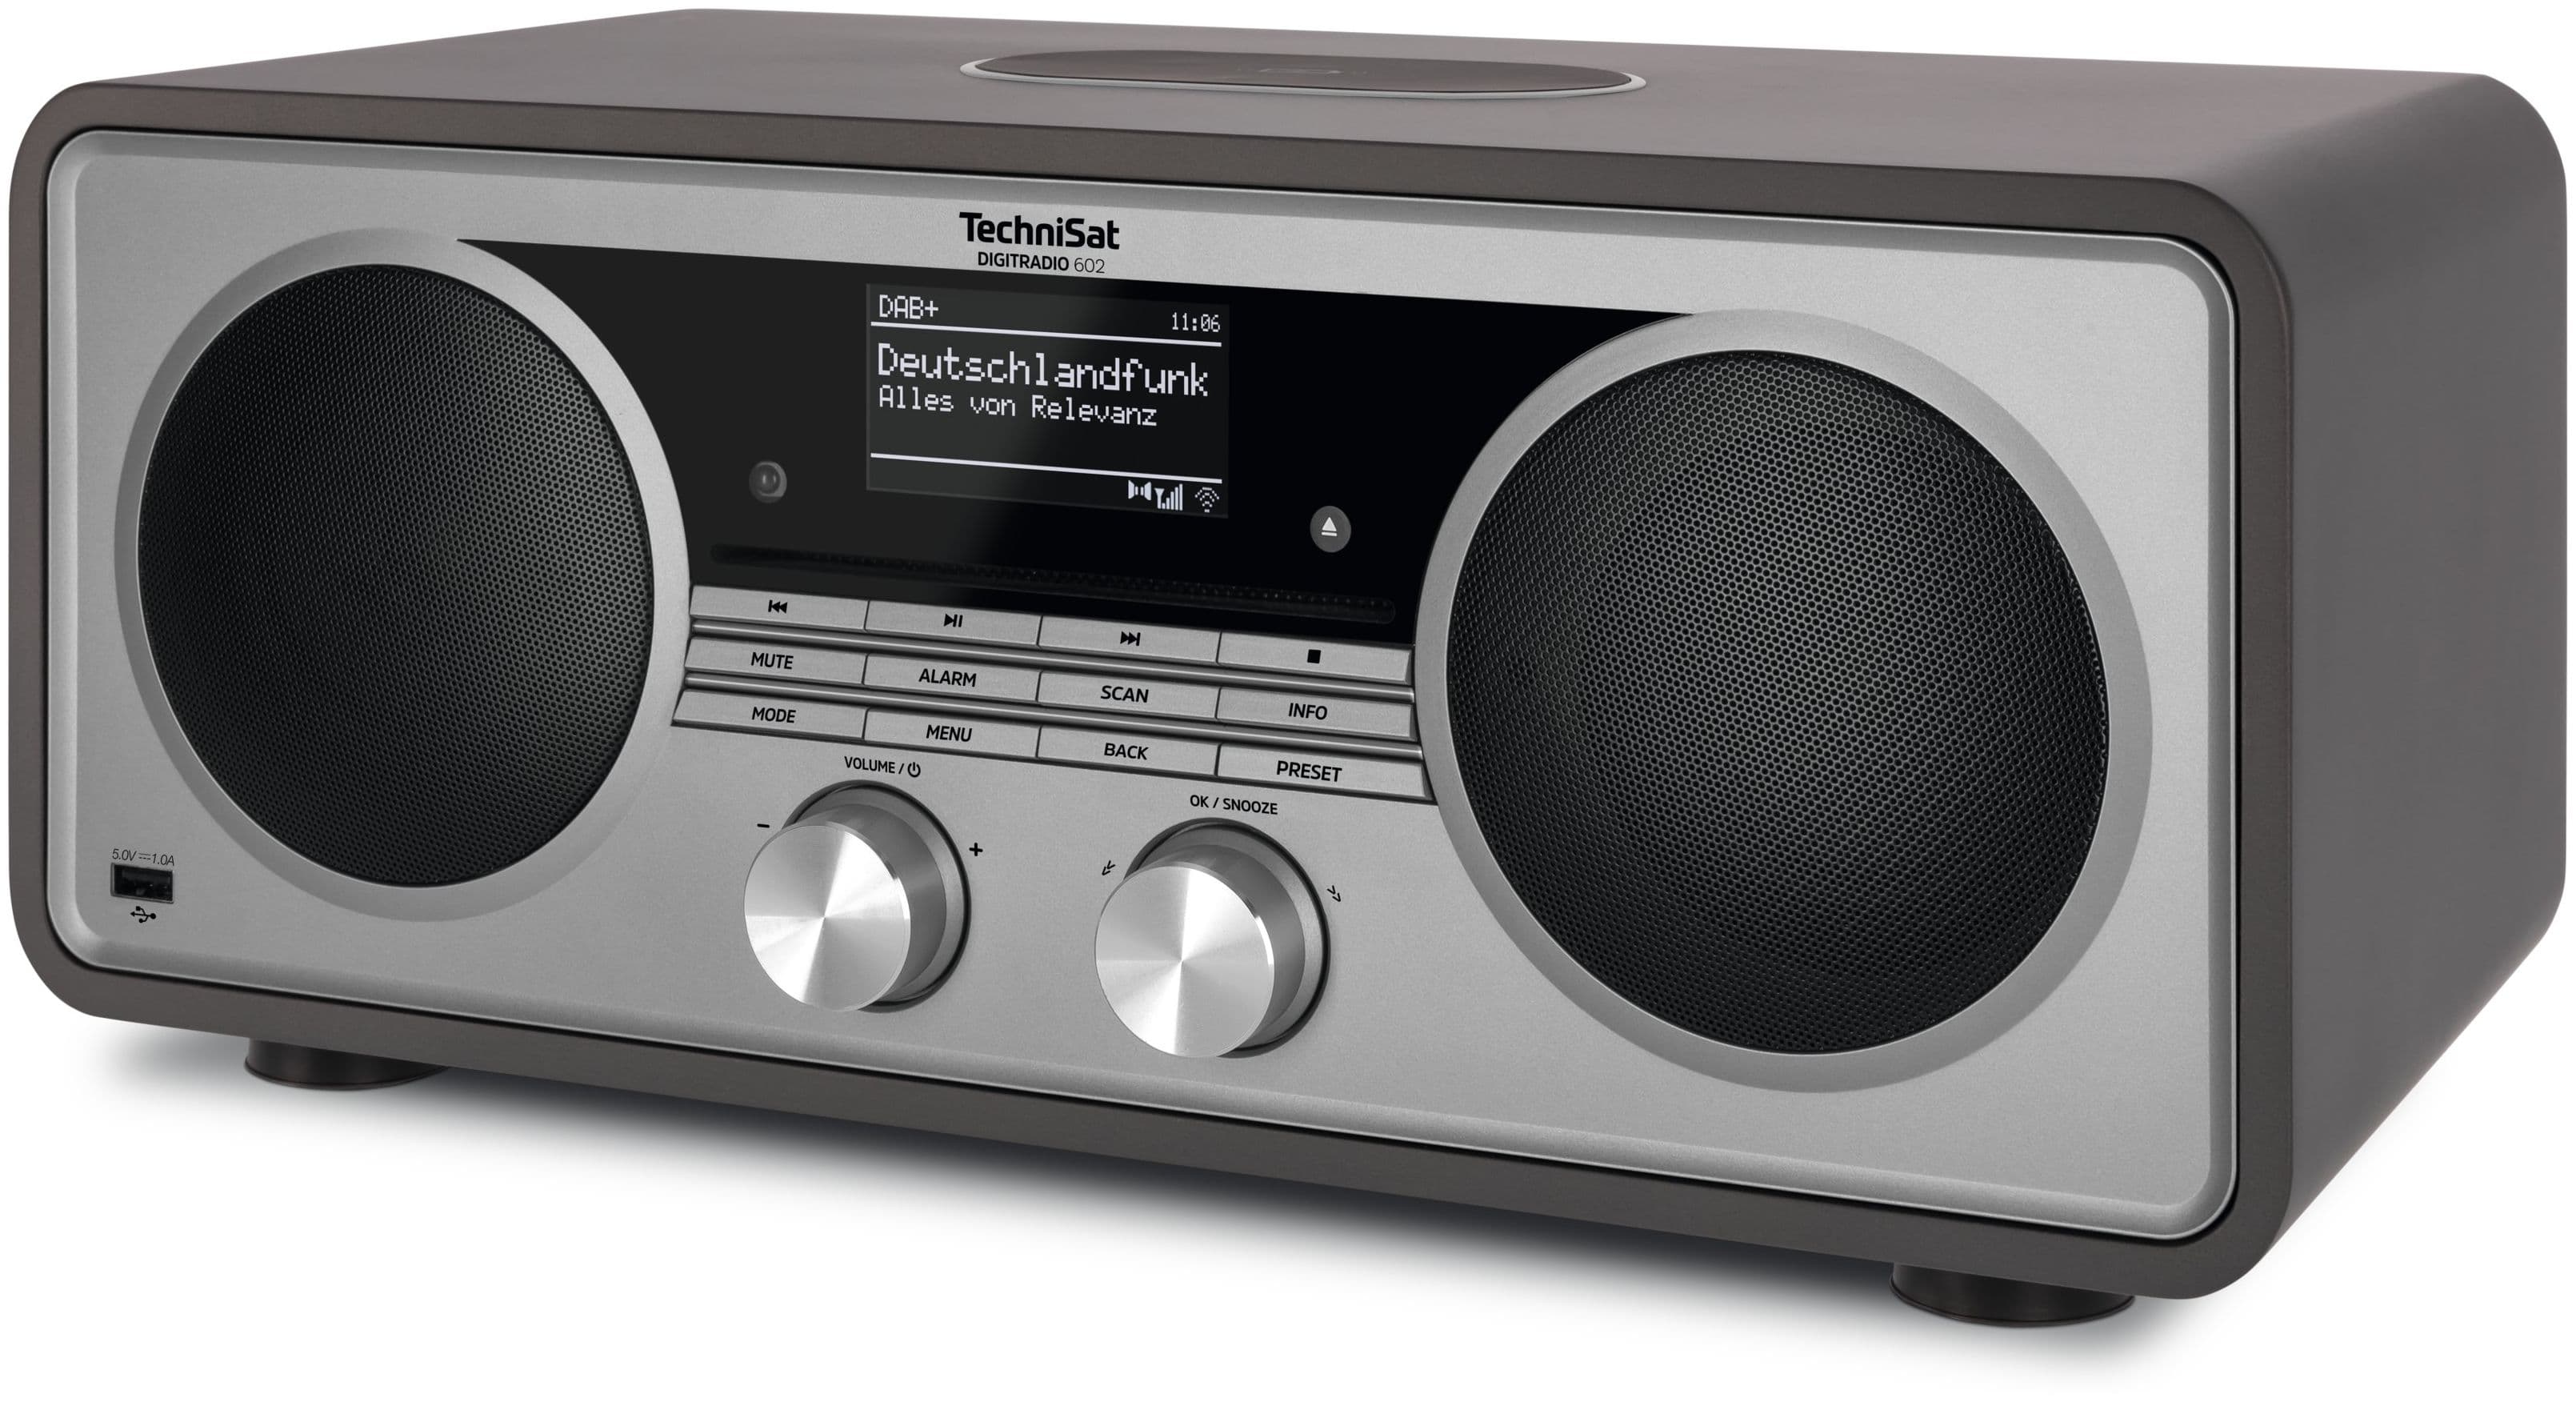 TechniSat DigitRadio 602 Bluetooth DAB+, bei FM Silber) Boomstore (Anthrazit, Radio